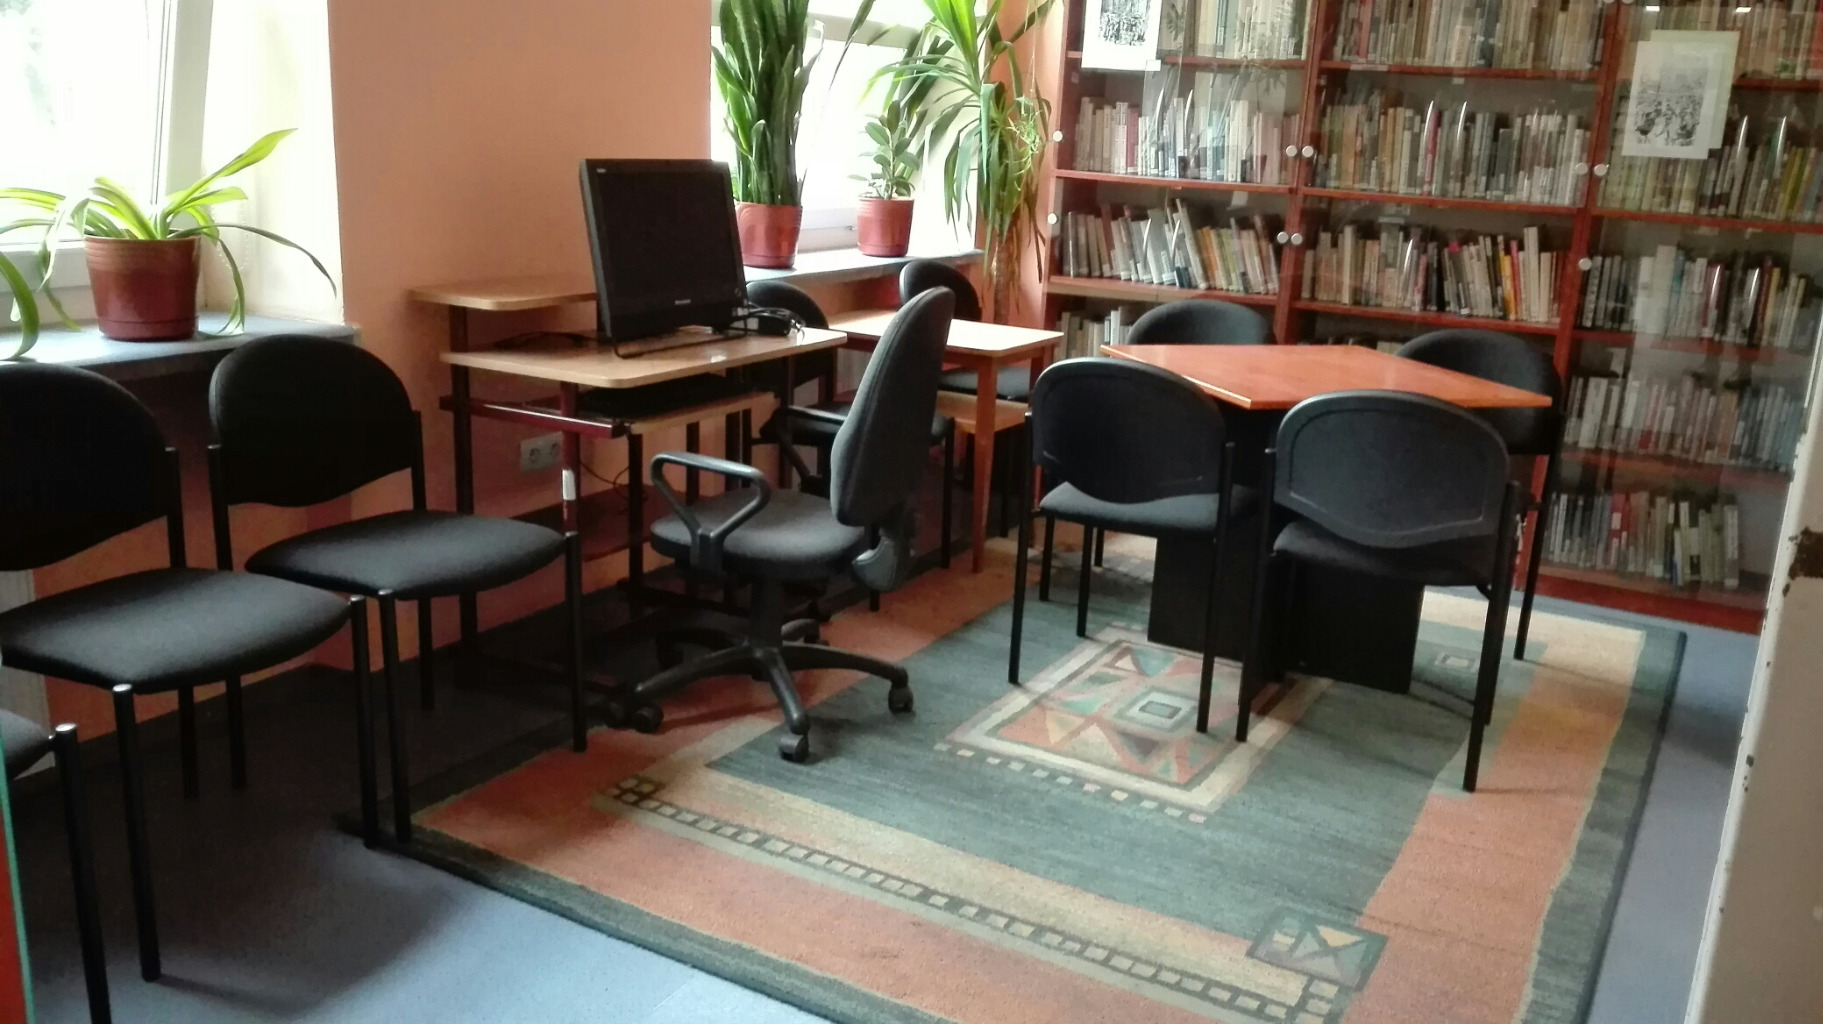 sala w bibliotece ze stanowiskiem komputerowym.